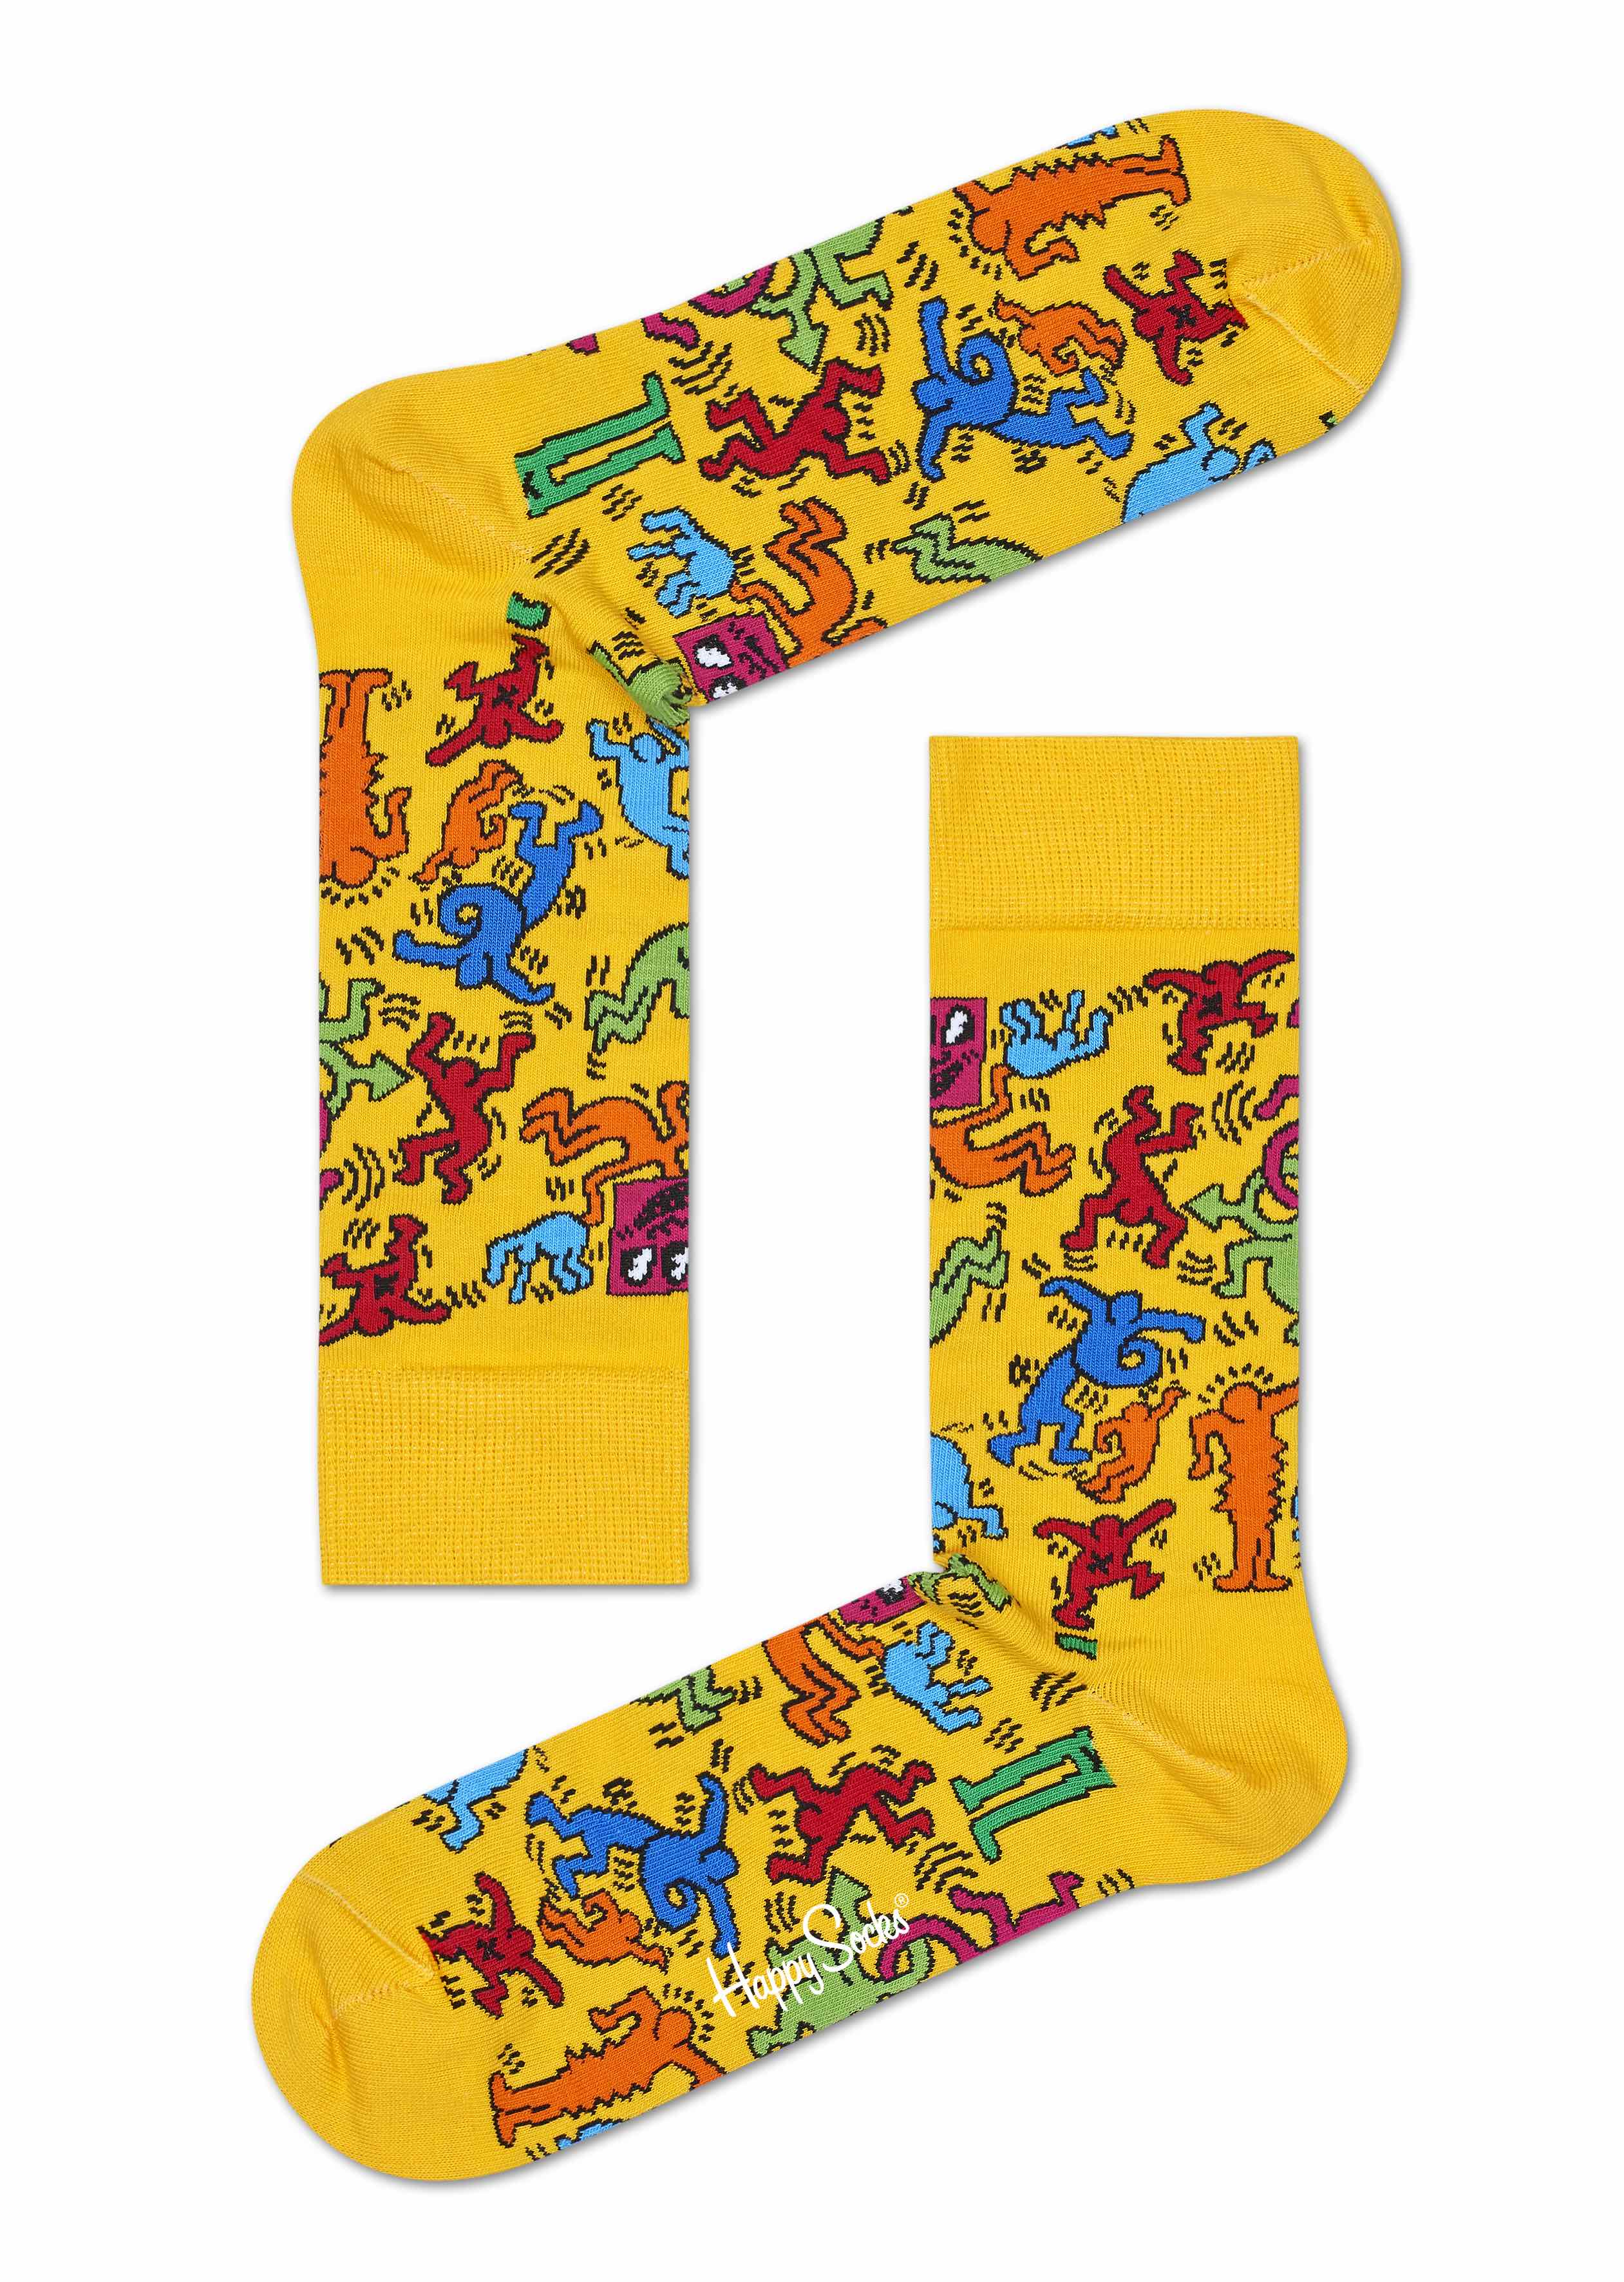 Happy Socks x Keith Haring strumpor gul ny